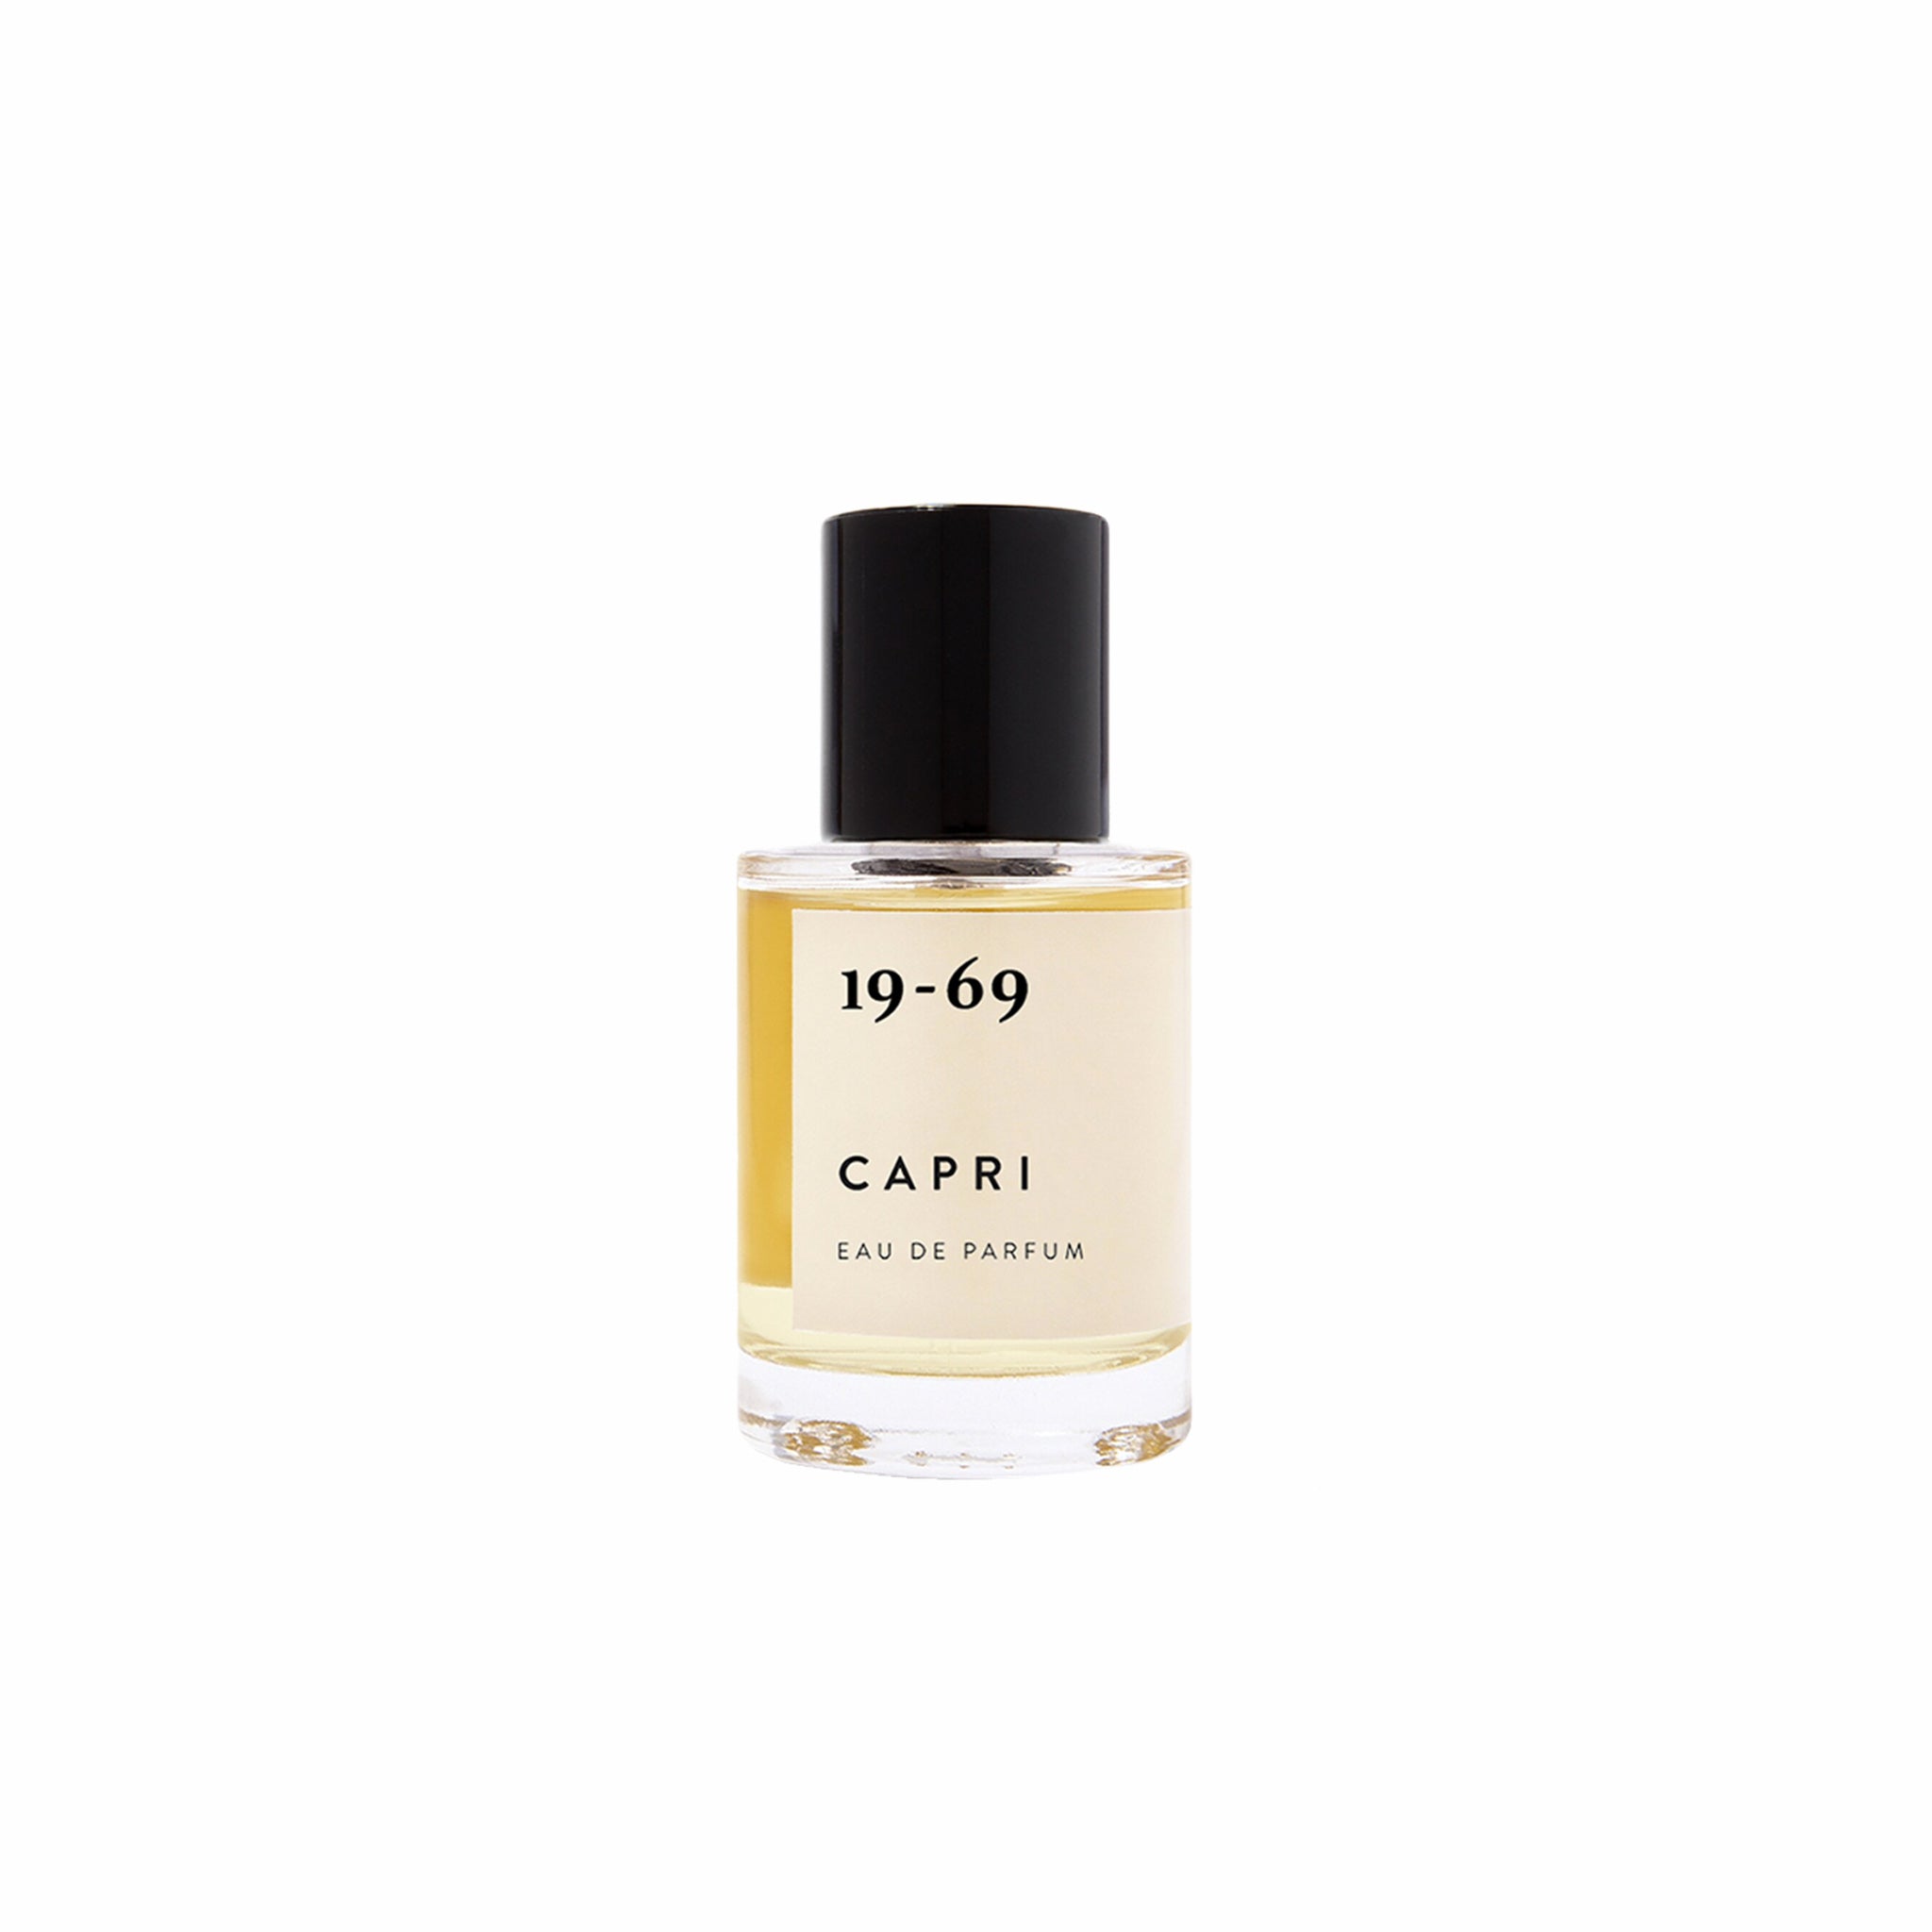 19-69 Capri Eau de Parfum (30mL) - August Shop